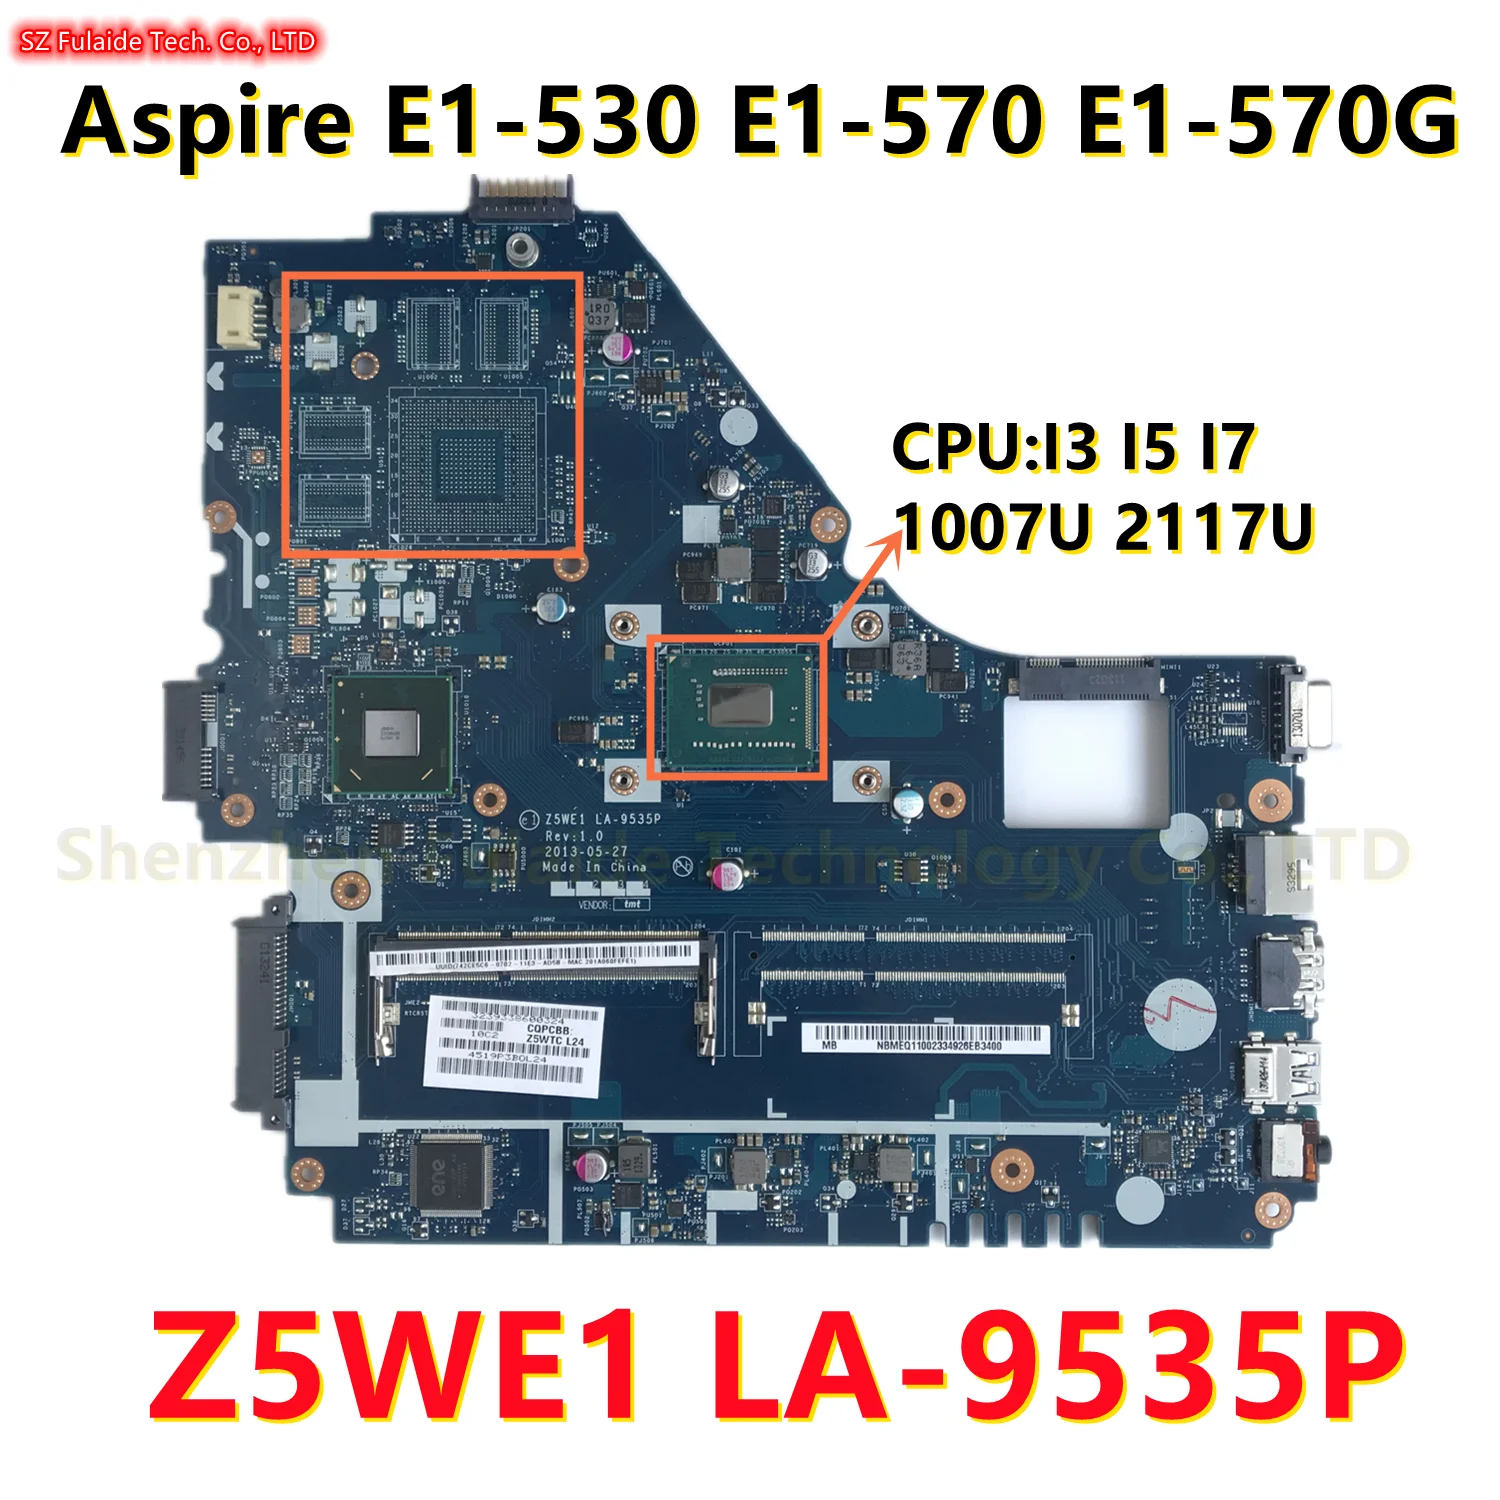 Z5WE1 LA-95325P Mainboard For Acer Aspire E1-530 E1-570 E1-570G Laptop Motherboard 1007U 2117U I3 I5 I7 CPU UMA DDR3 100% Tested